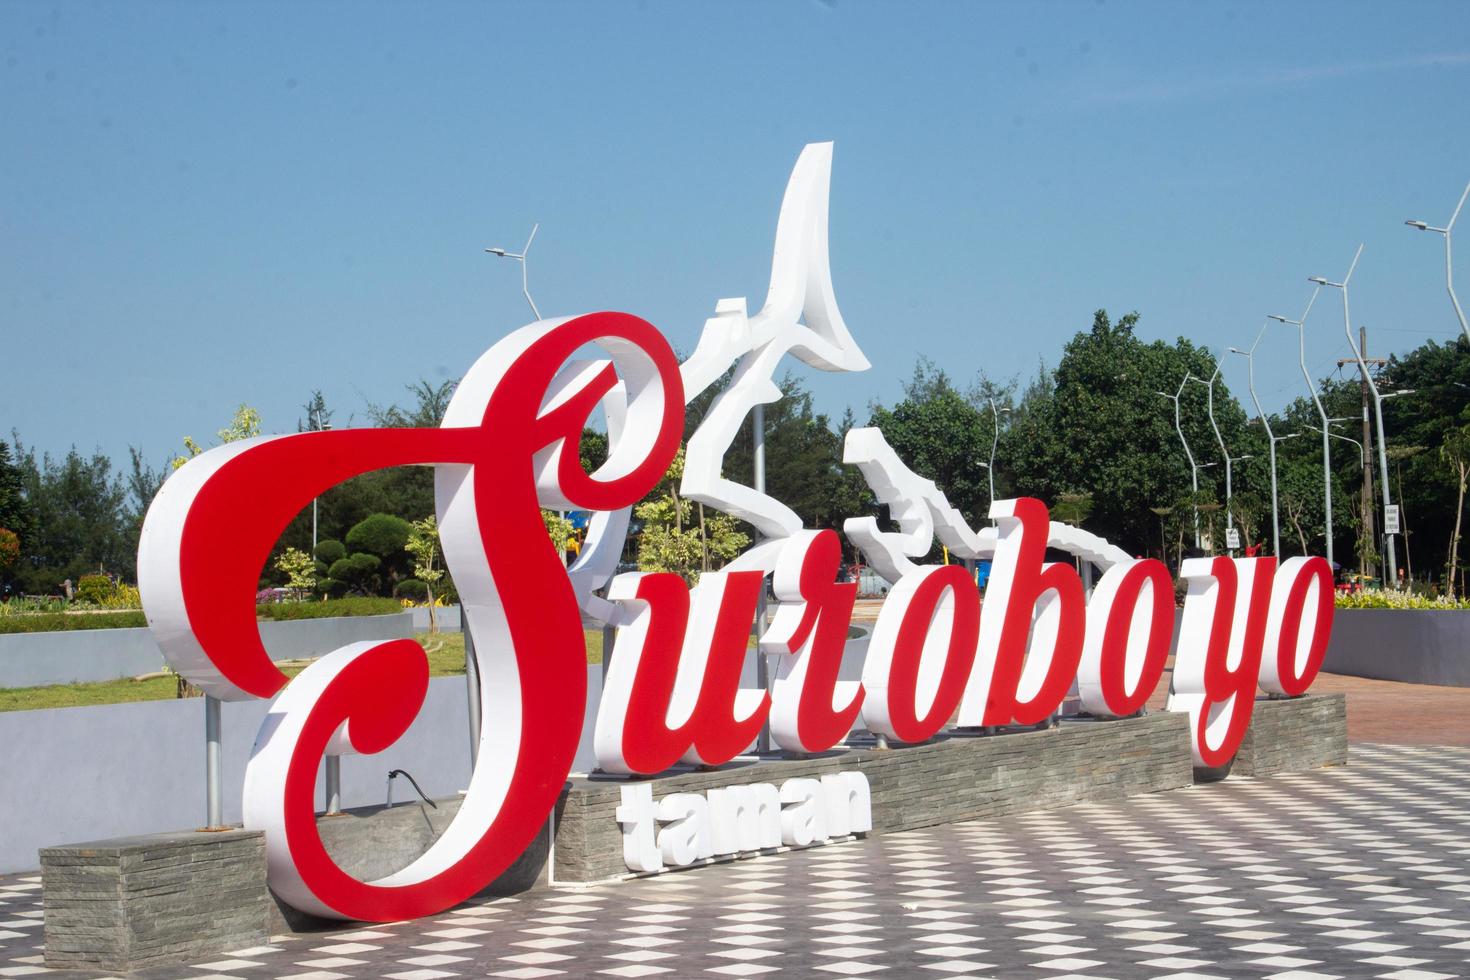 firmar tablero de suroboyo parque, un atractivo playa parque en surabaya. foto